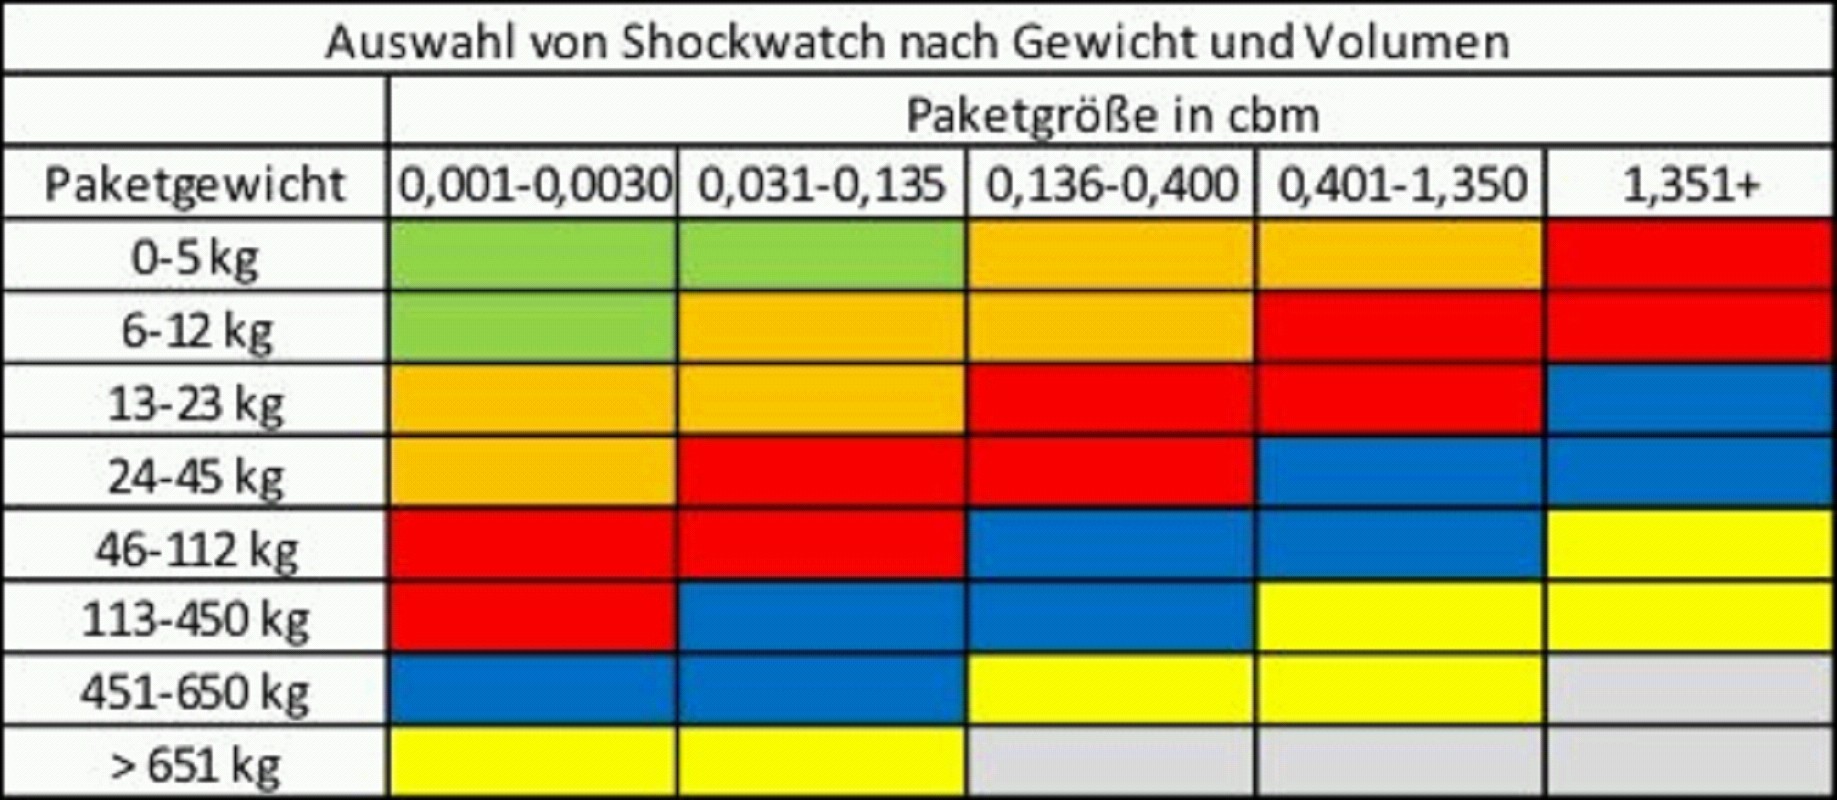 Shockwatch, 37G, violett